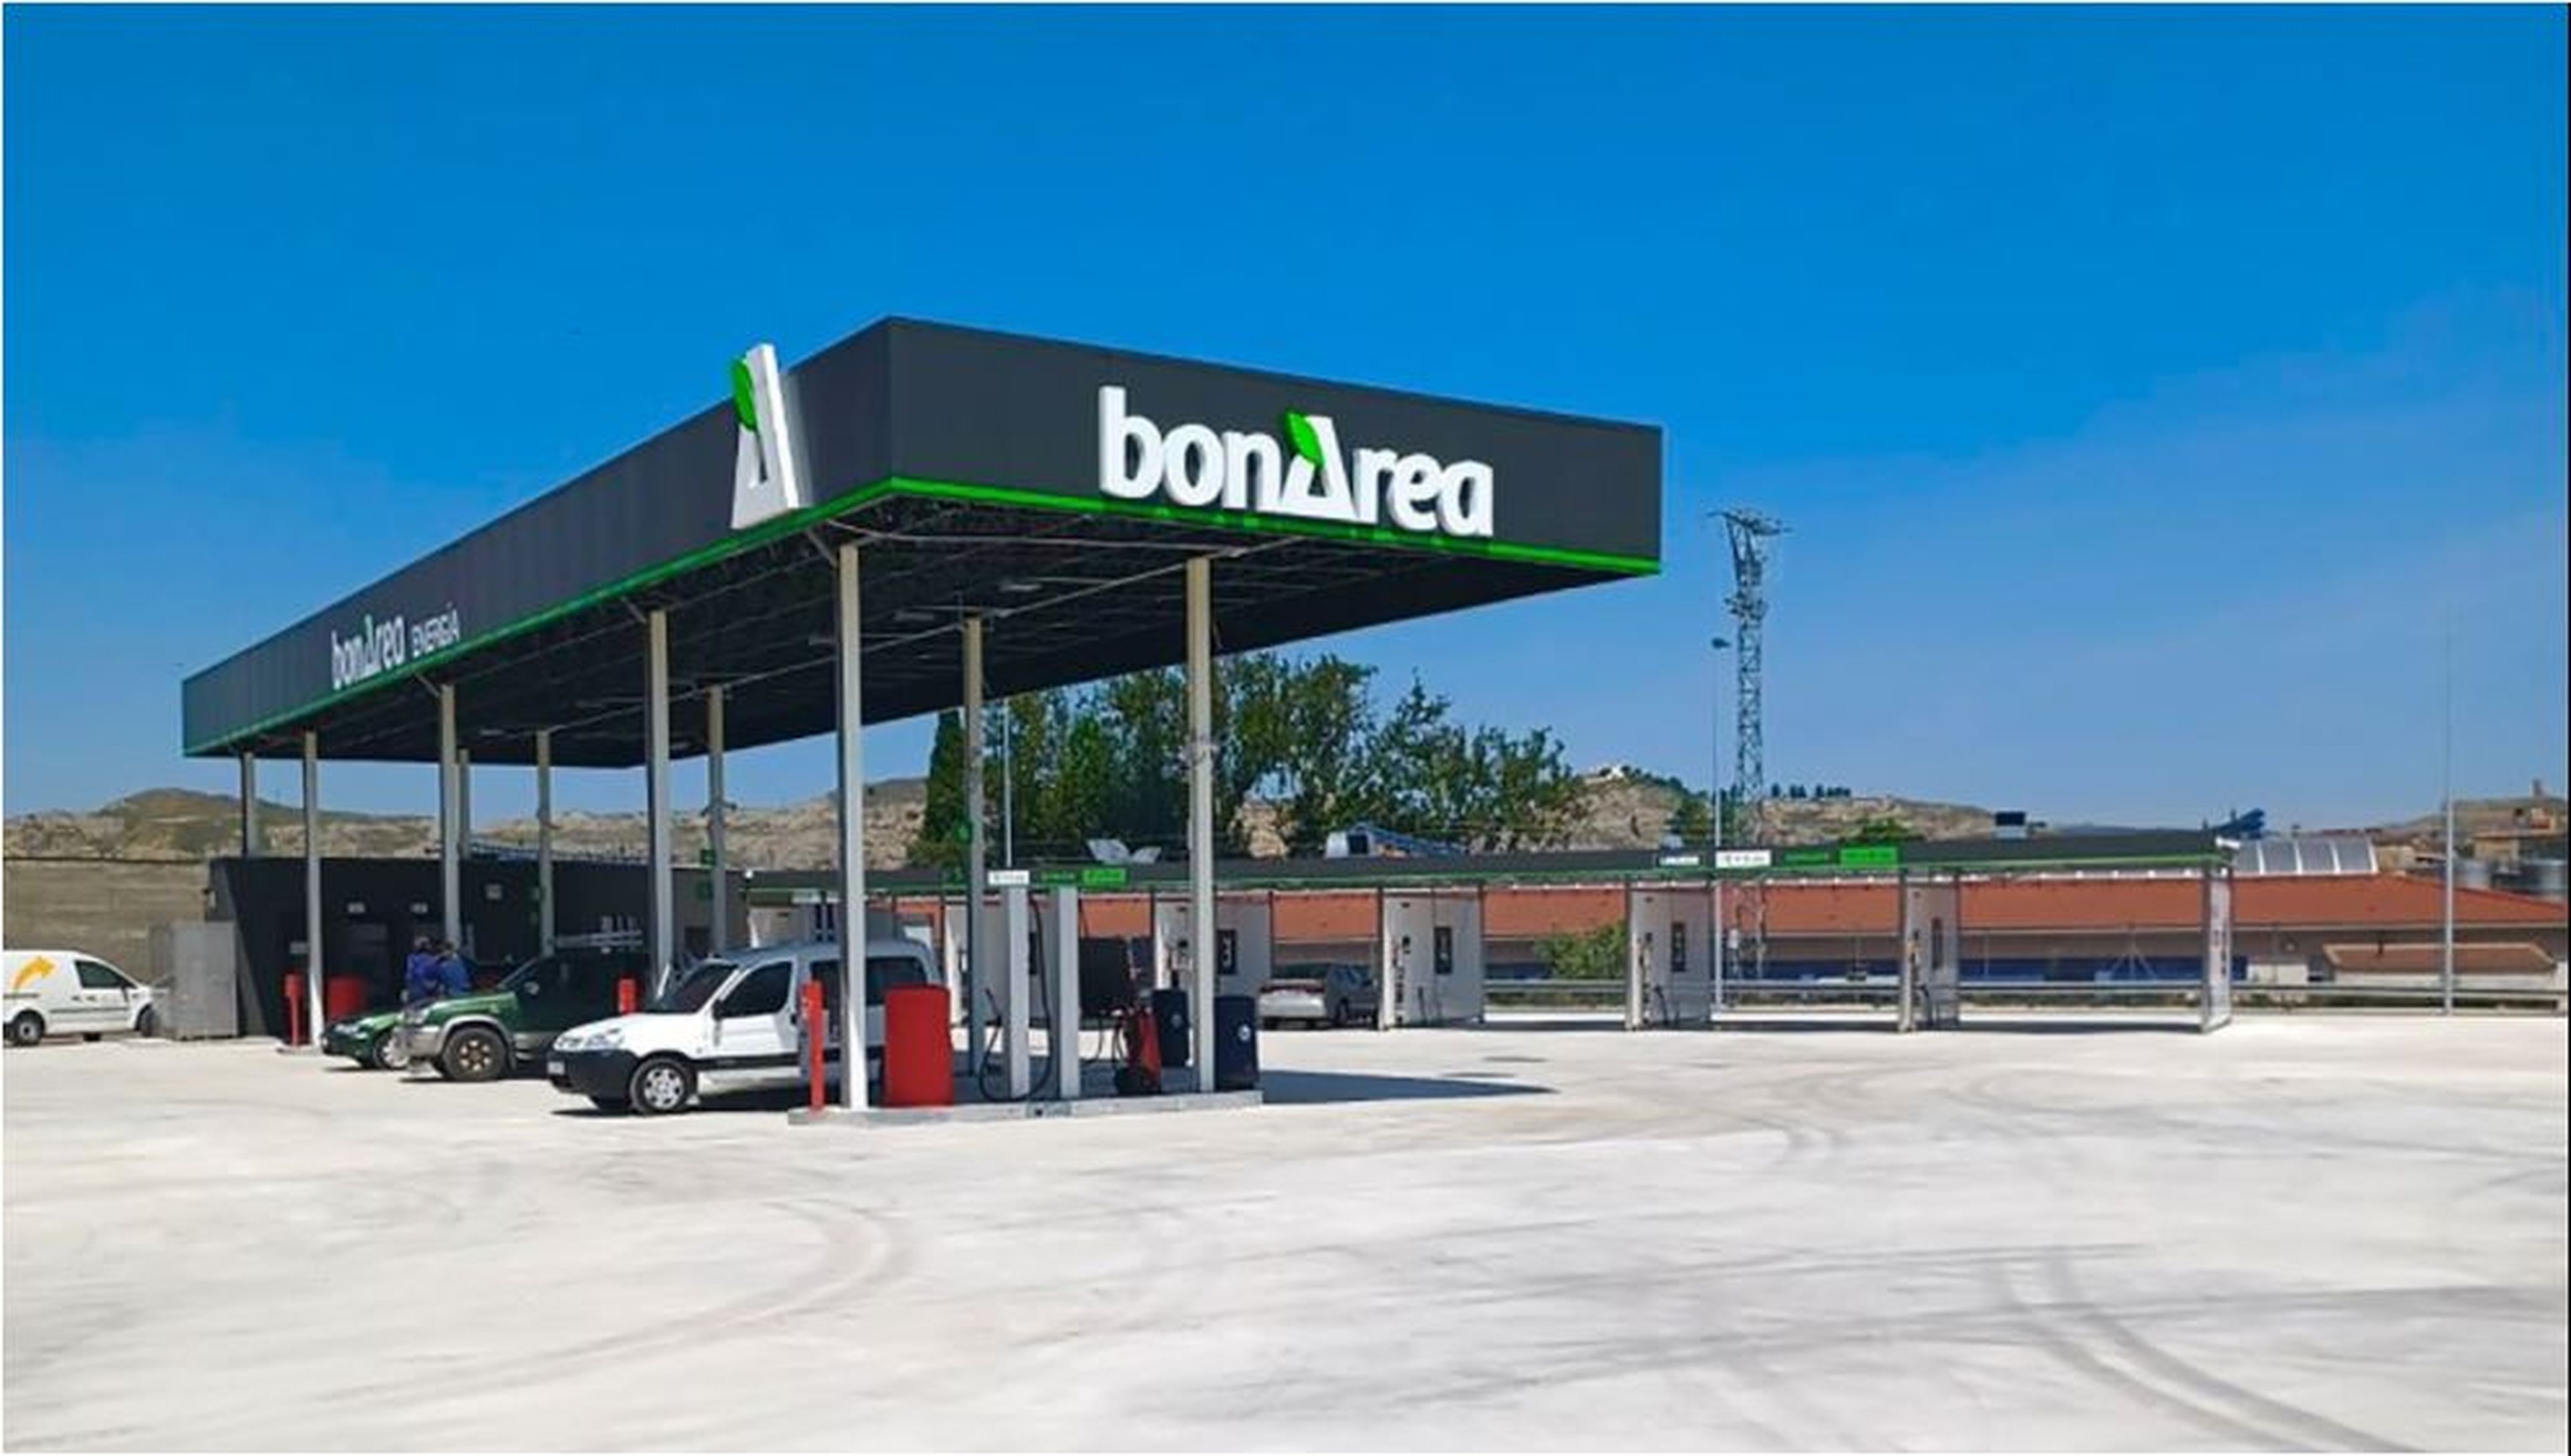 Las gasolineras de bonÁrea son de las más baratas de España.